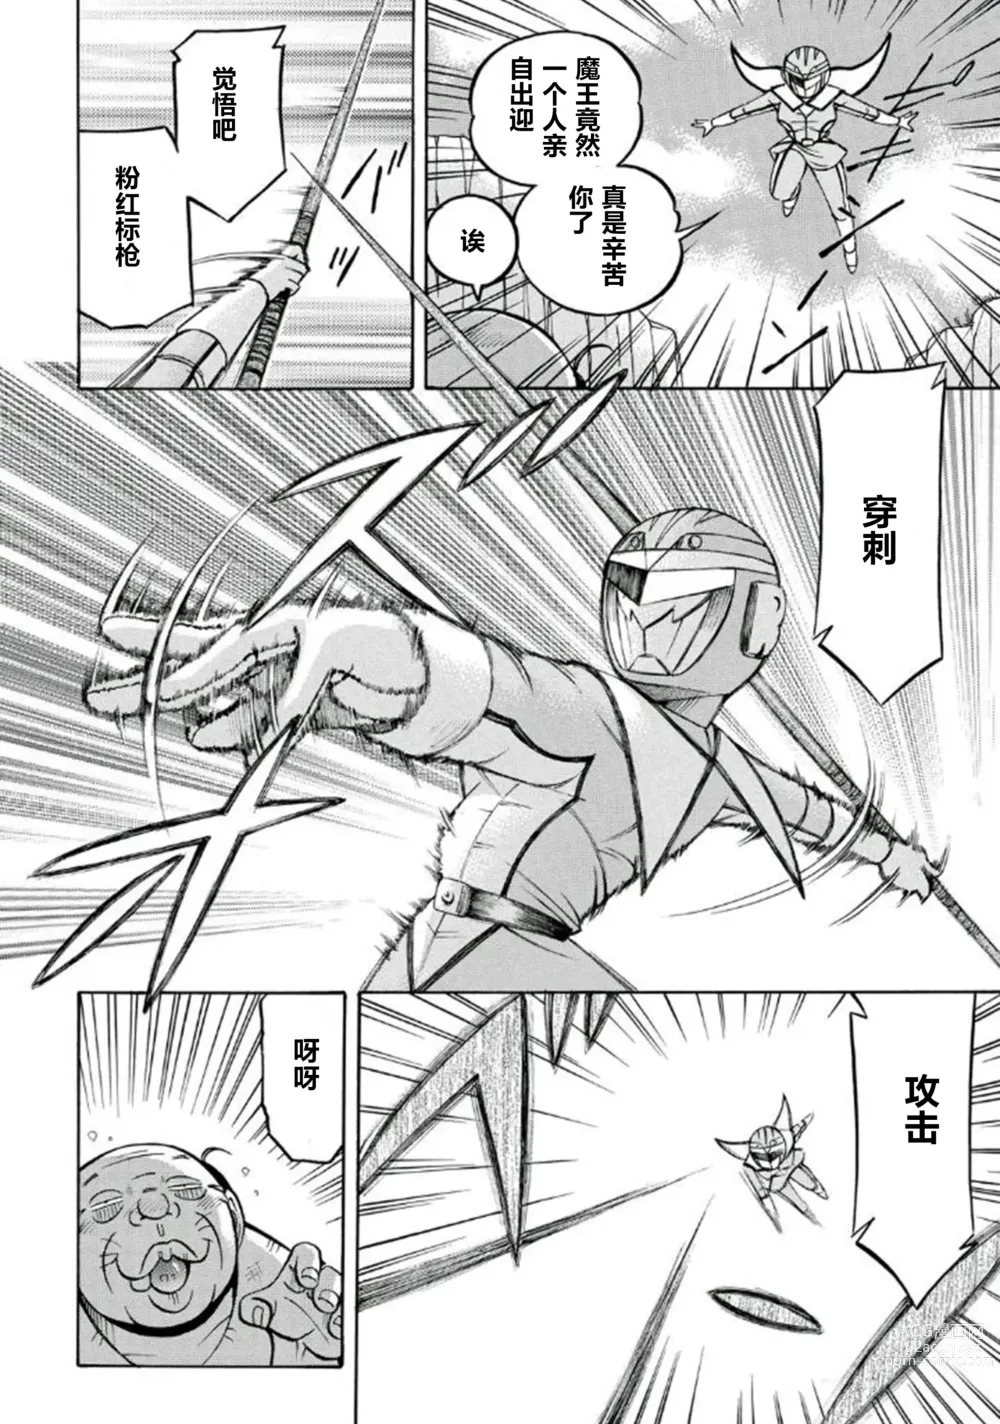 Page 13 of manga Pink Kuppuku - Pink Surrender